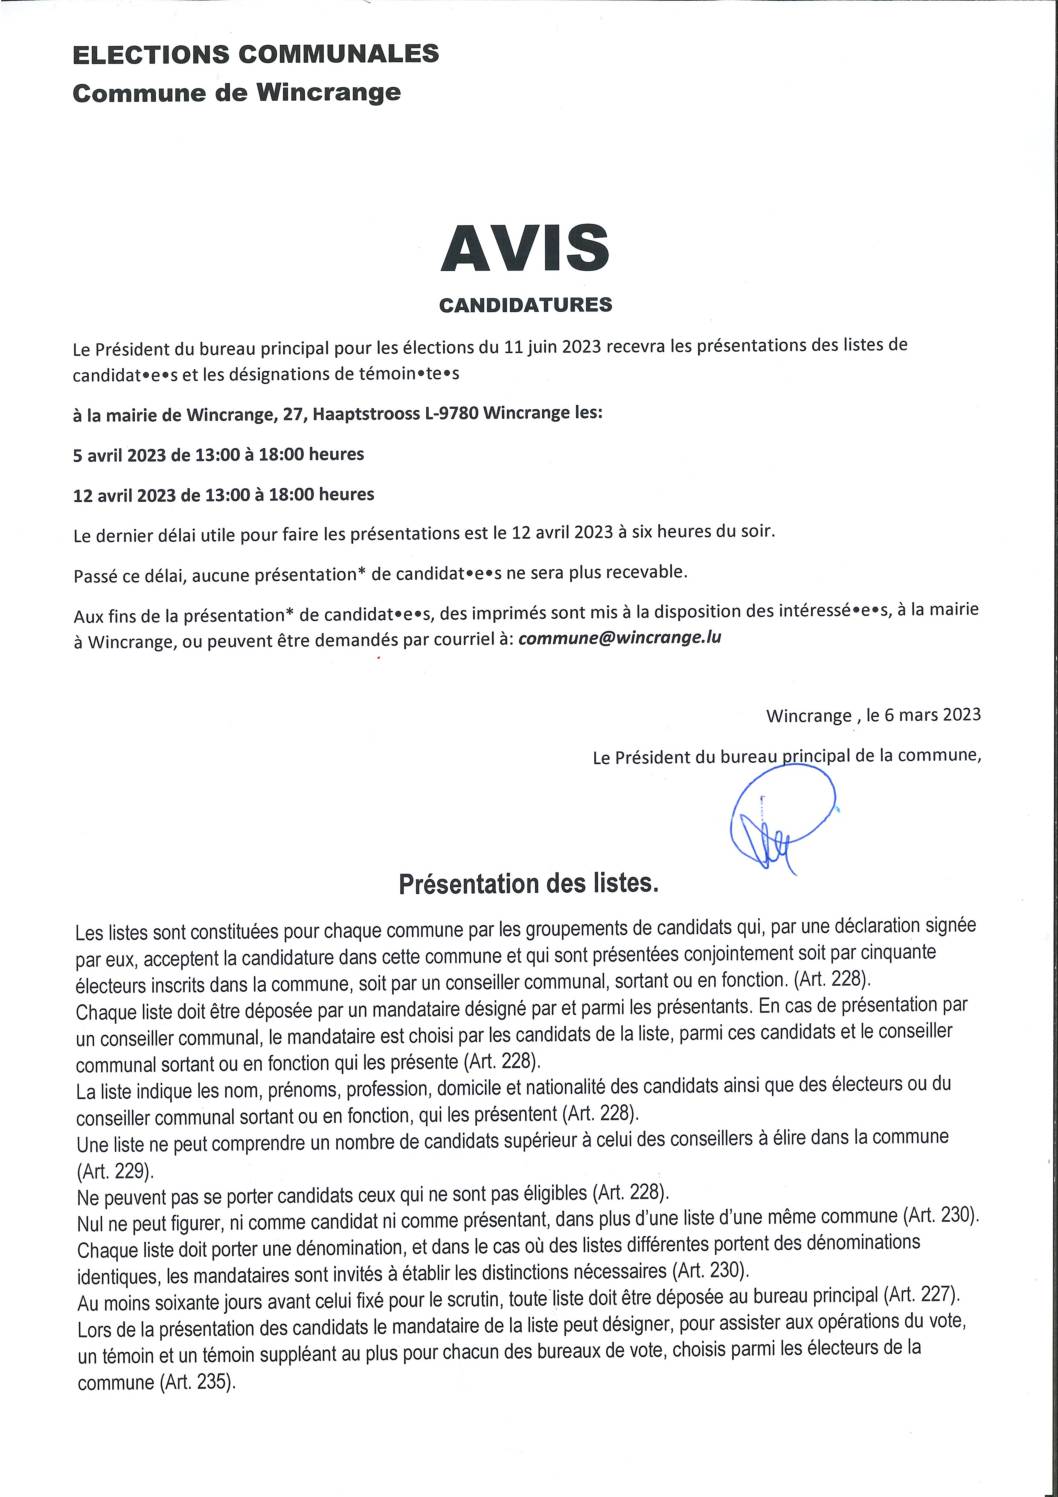 AVIS: Présentation des candidatures aux élections communales du 11 juin 2023